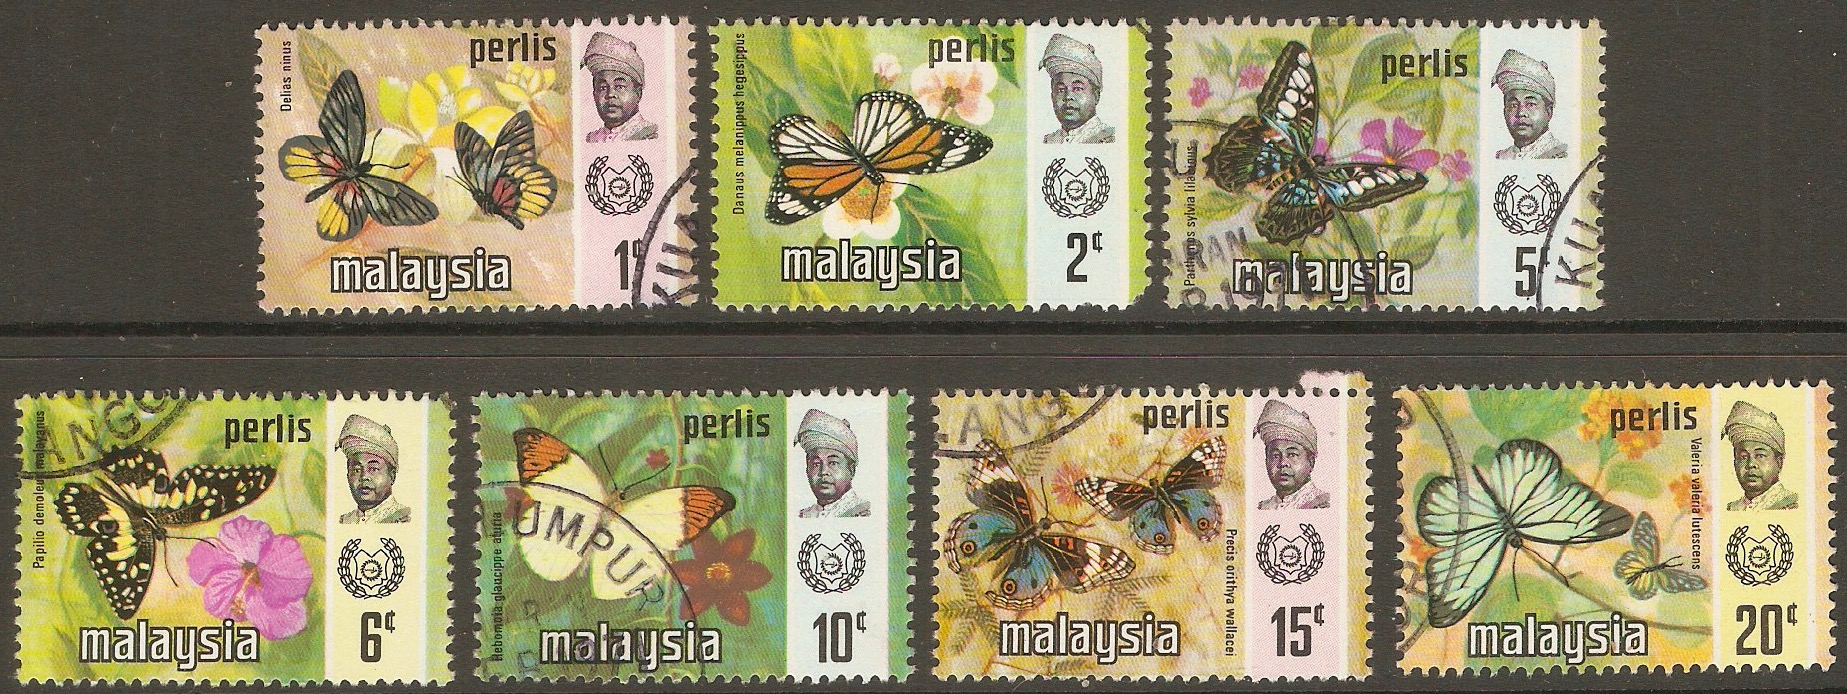 Perlis 1971 Butterflies set. SG48-SG54.